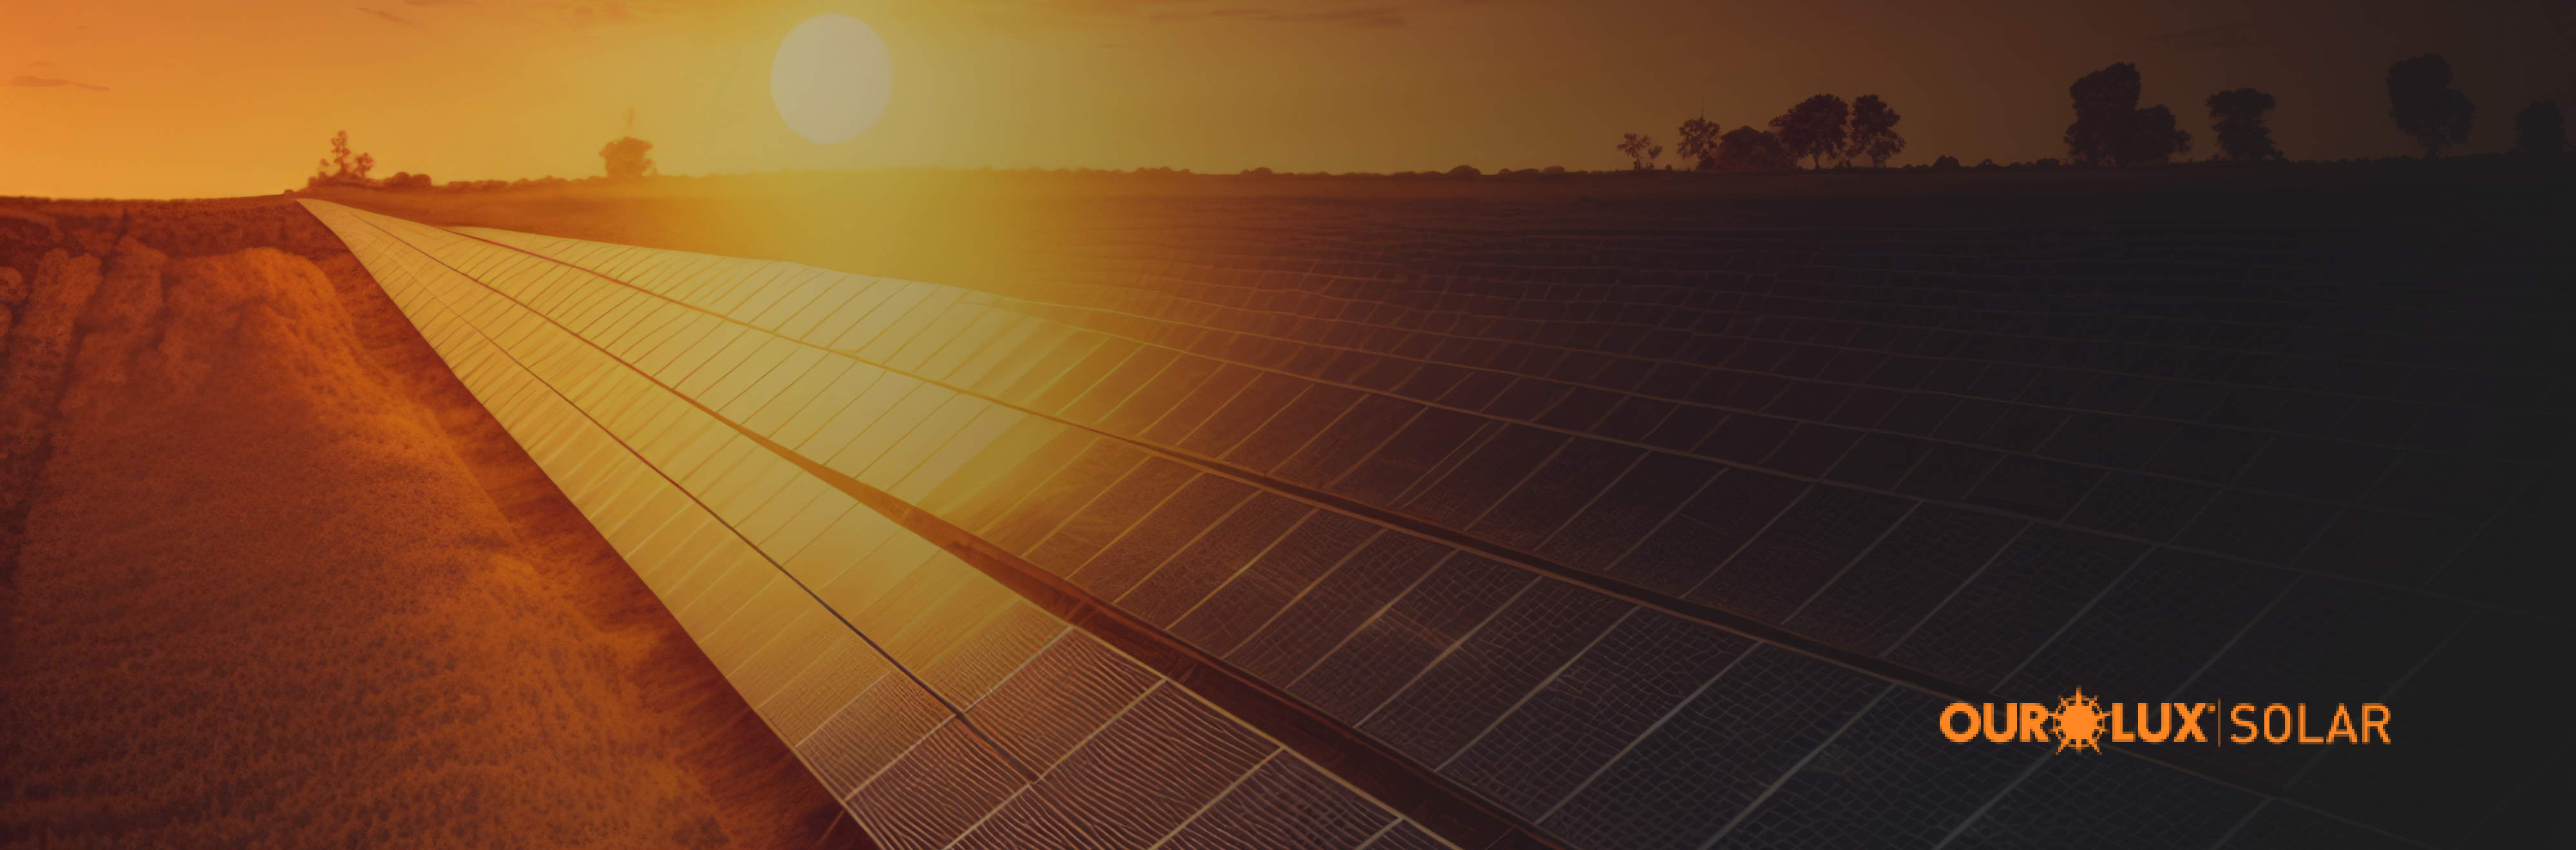 Energia solar no verão: como aproveitar ao máximo essa fonte renovável